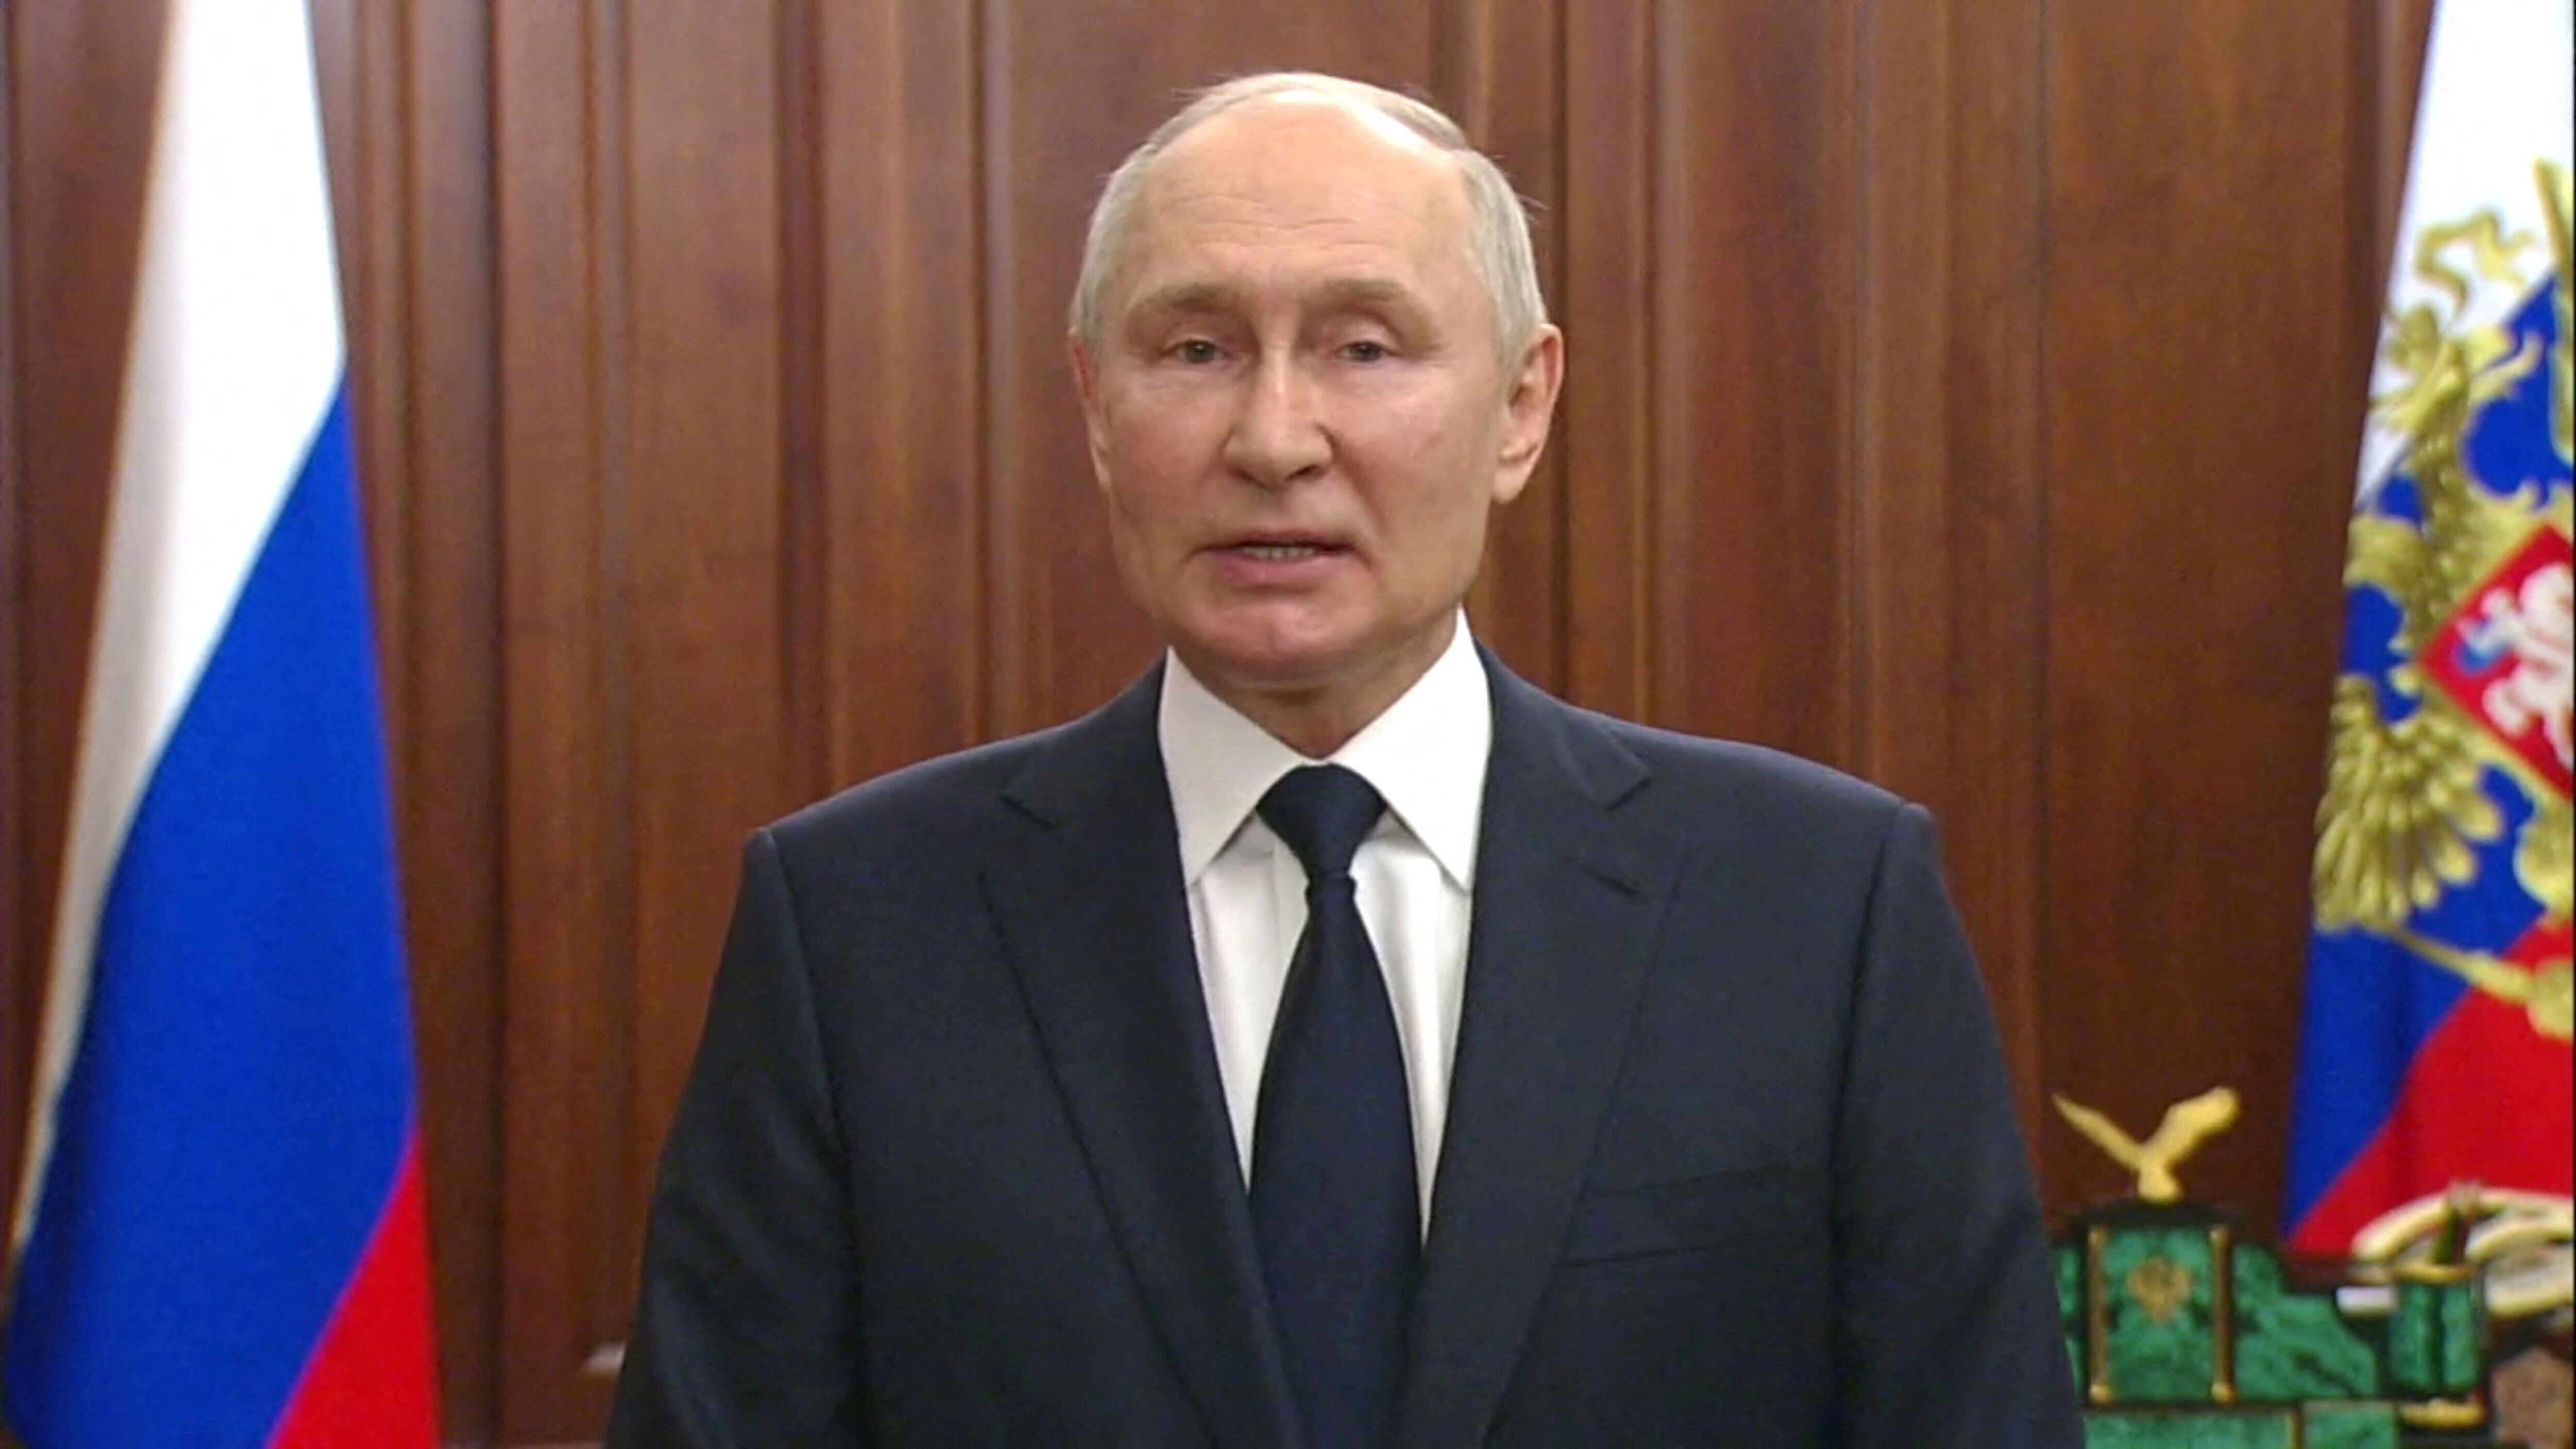 블라디미르 푸틴 러시아 대통령이 지난달 26일(현지 시각) 모스크바에서 TV 연설을 하고 있다. /로이터 연합뉴스